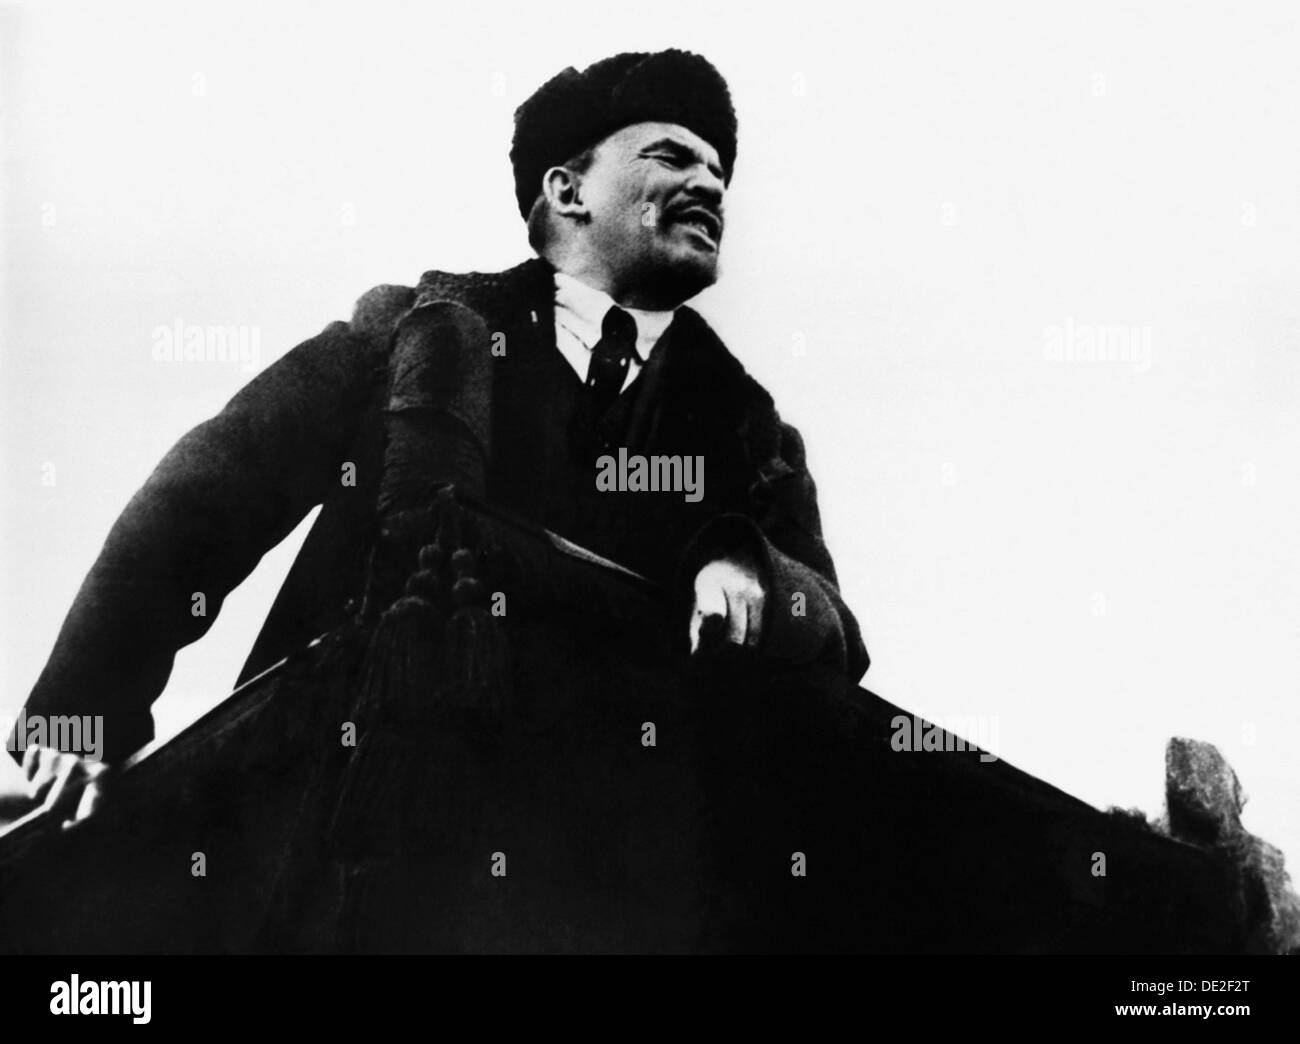 Wladimir Lenin Ilich, russischen bolschewistischen revolutionären Führer, sprechen von einer Kanzel, 1917. Artist: Unbekannt Stockfoto